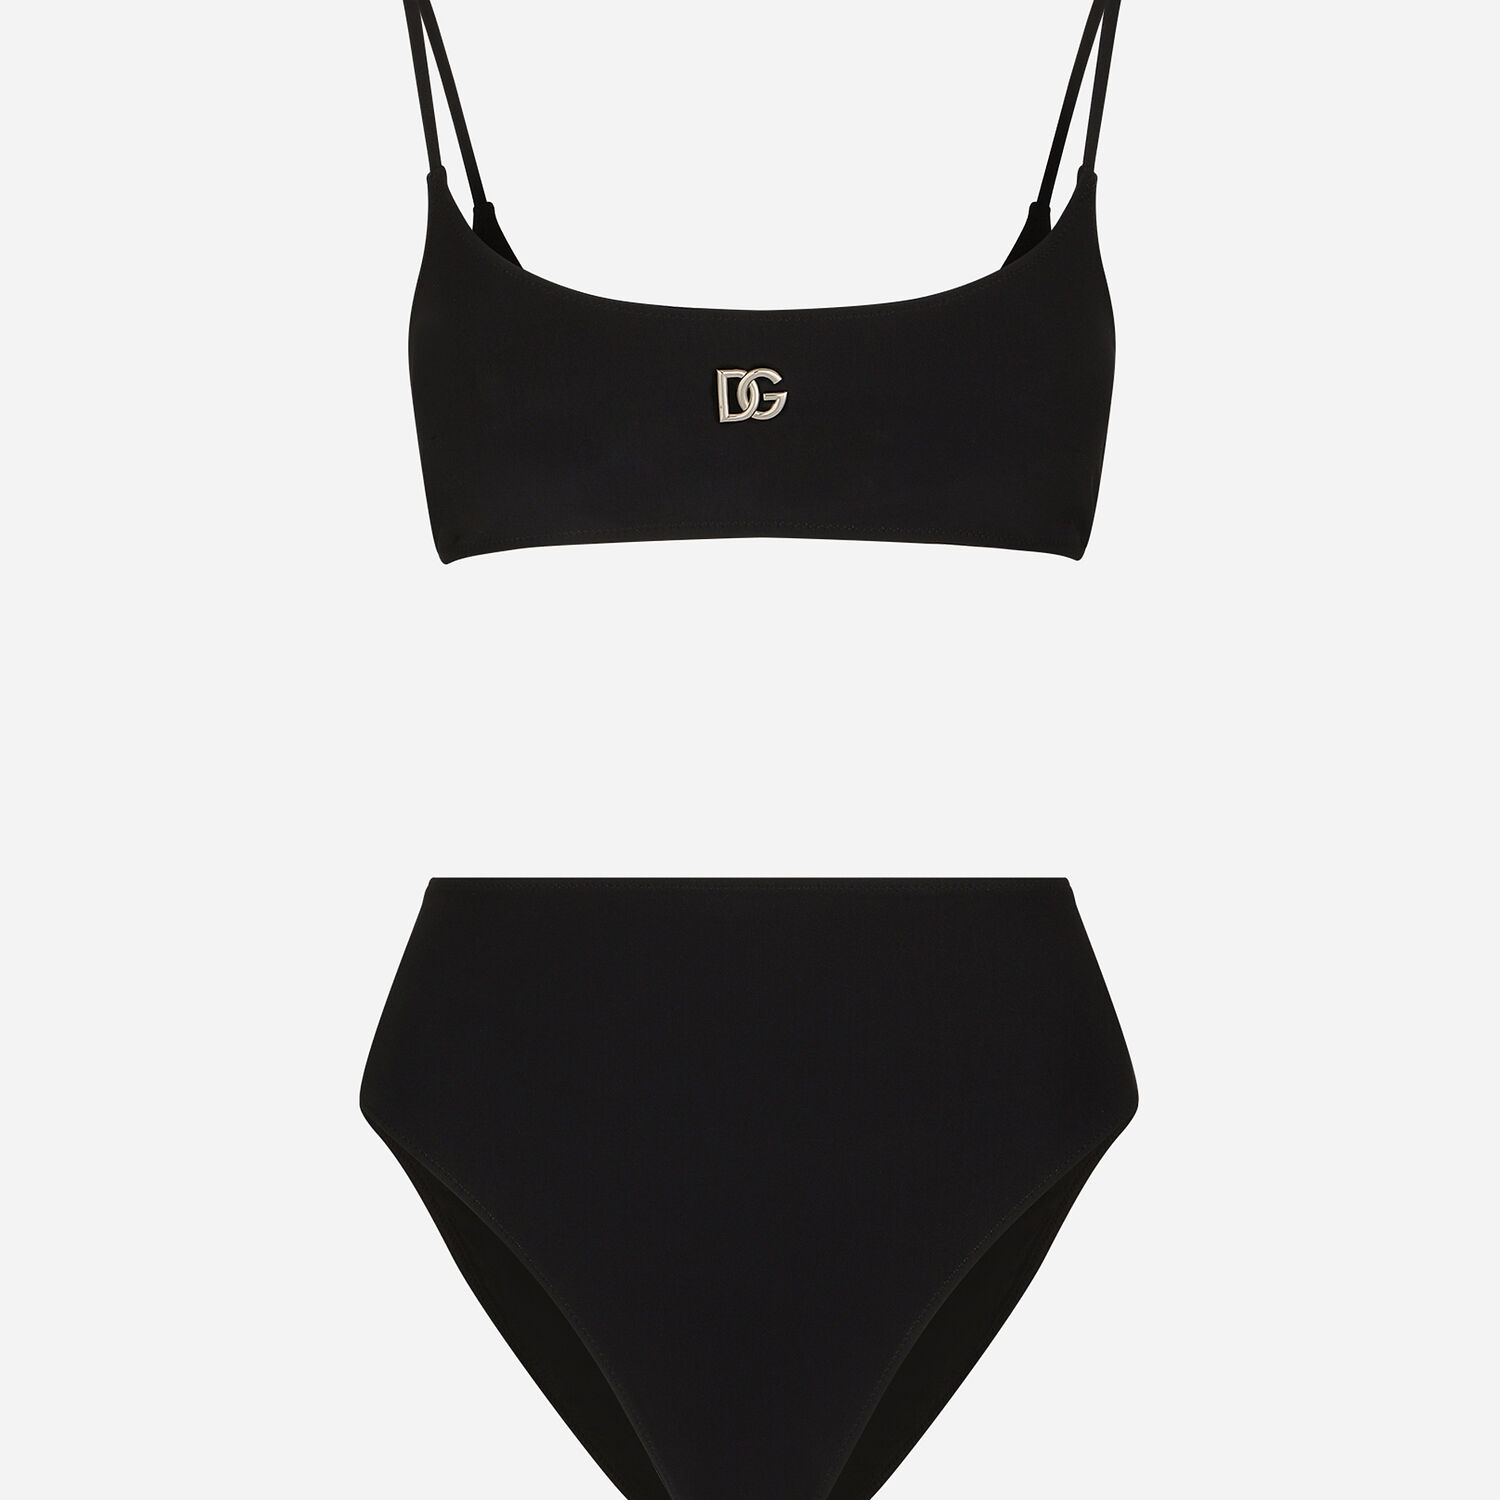 Bralet bikini with DG logo in Black for